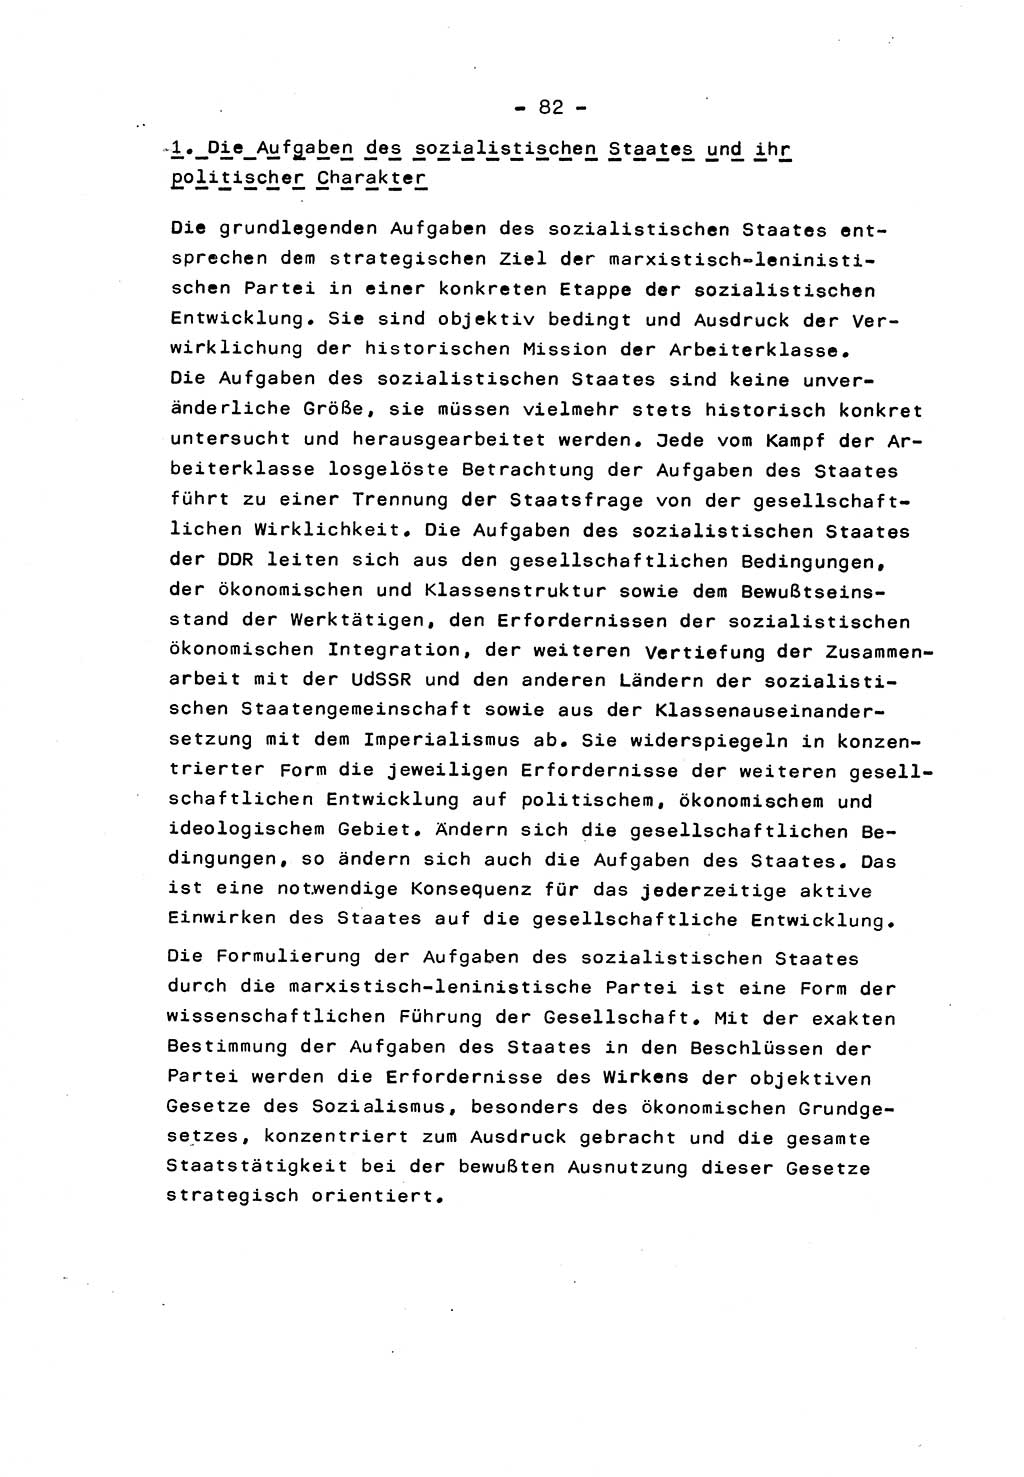 Marxistisch-leninistische Staats- und Rechtstheorie [Deutsche Demokratische Republik (DDR)] 1975, Seite 82 (ML St.-R.-Th. DDR 1975, S. 82)